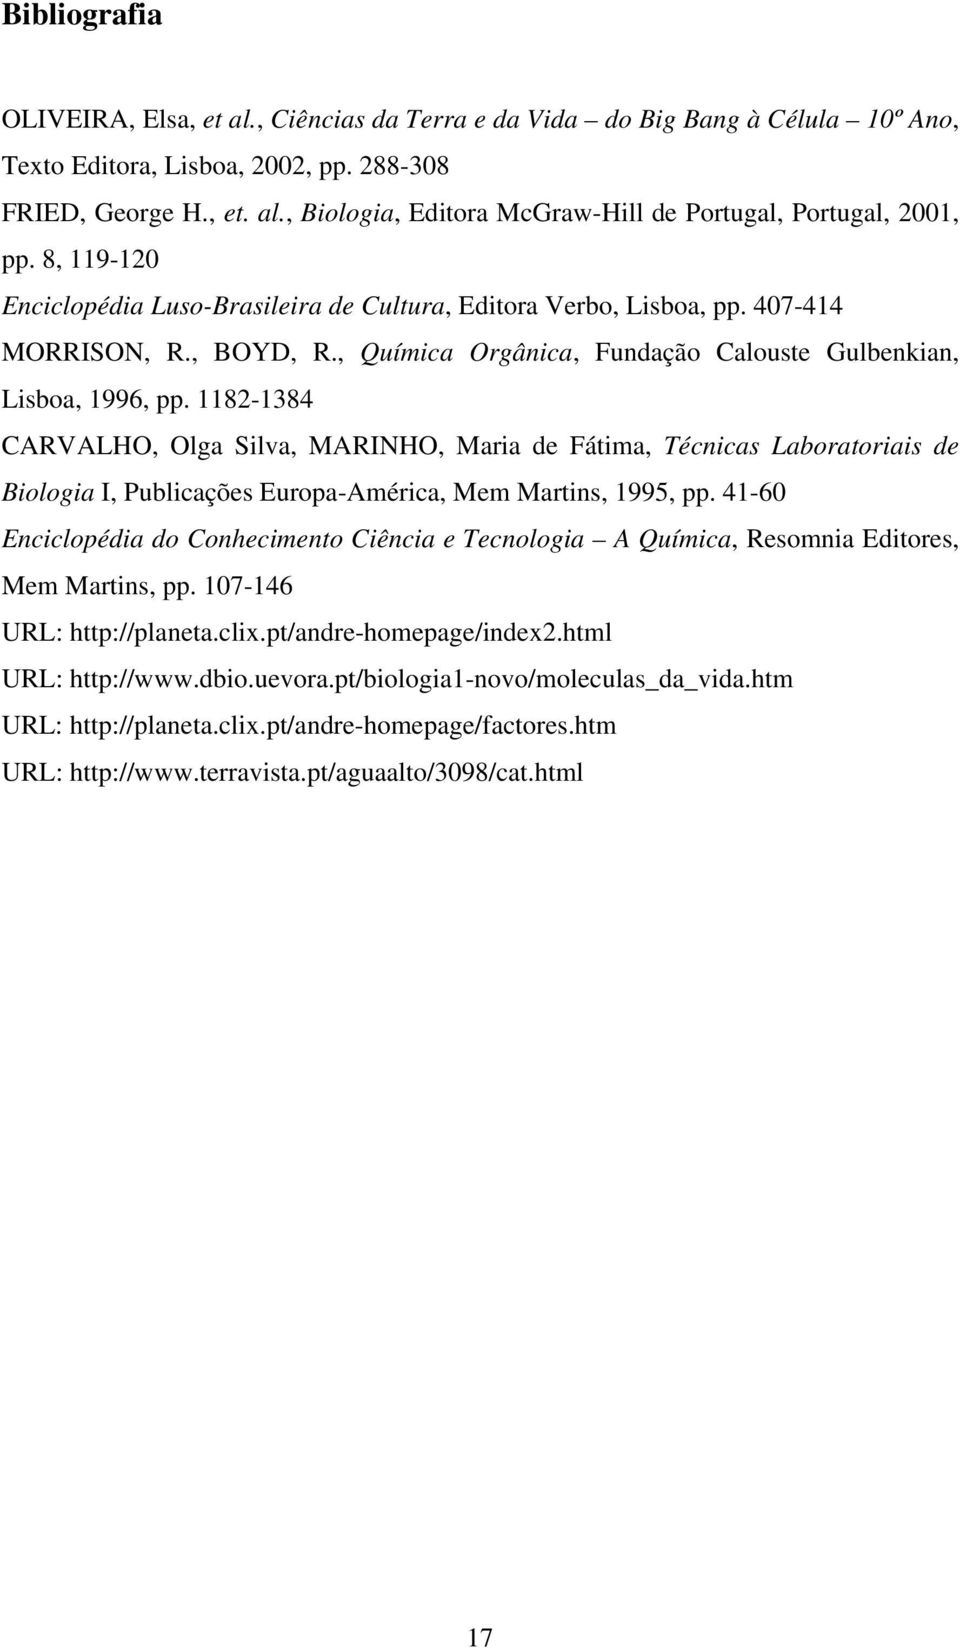 1182-1384 CARVALHO, Olga Silva, MARINHO, Maria de Fátima, Técnicas Laboratoriais de Biologia I, Publicações Europa-América, Mem Martins, 1995, pp.